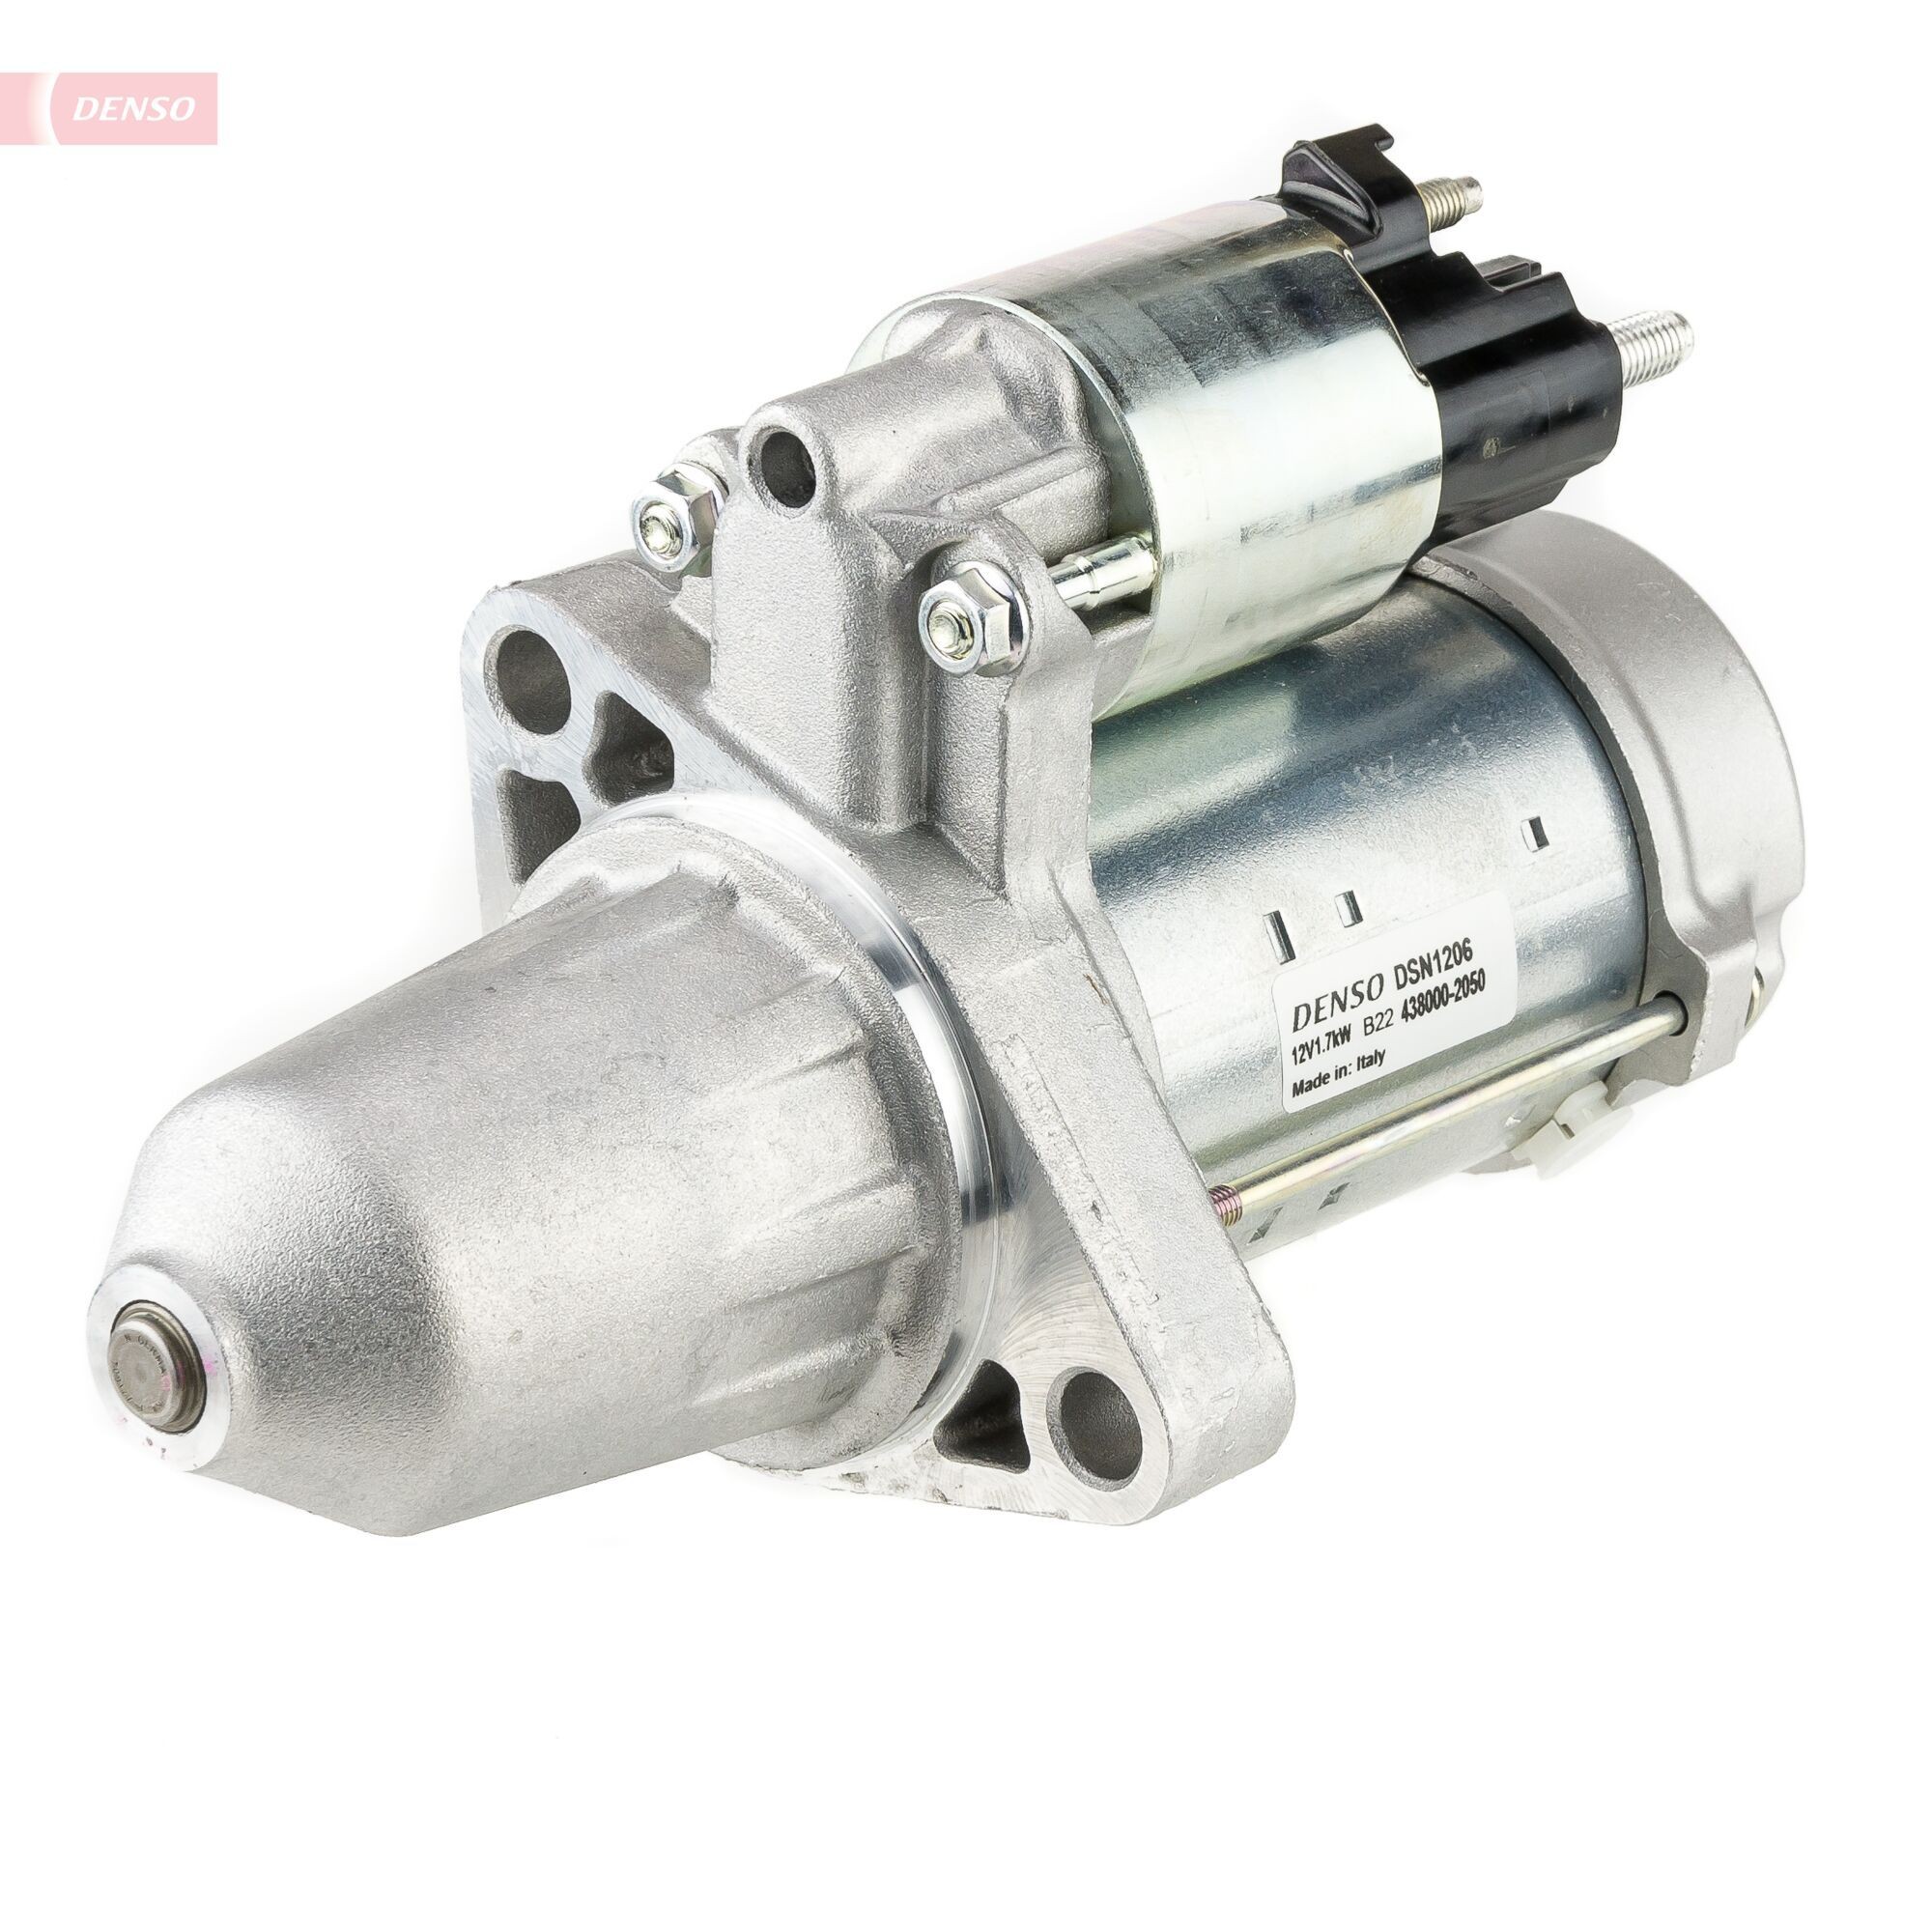 DENSO DSN1206 Starter motor A270-906-07-00